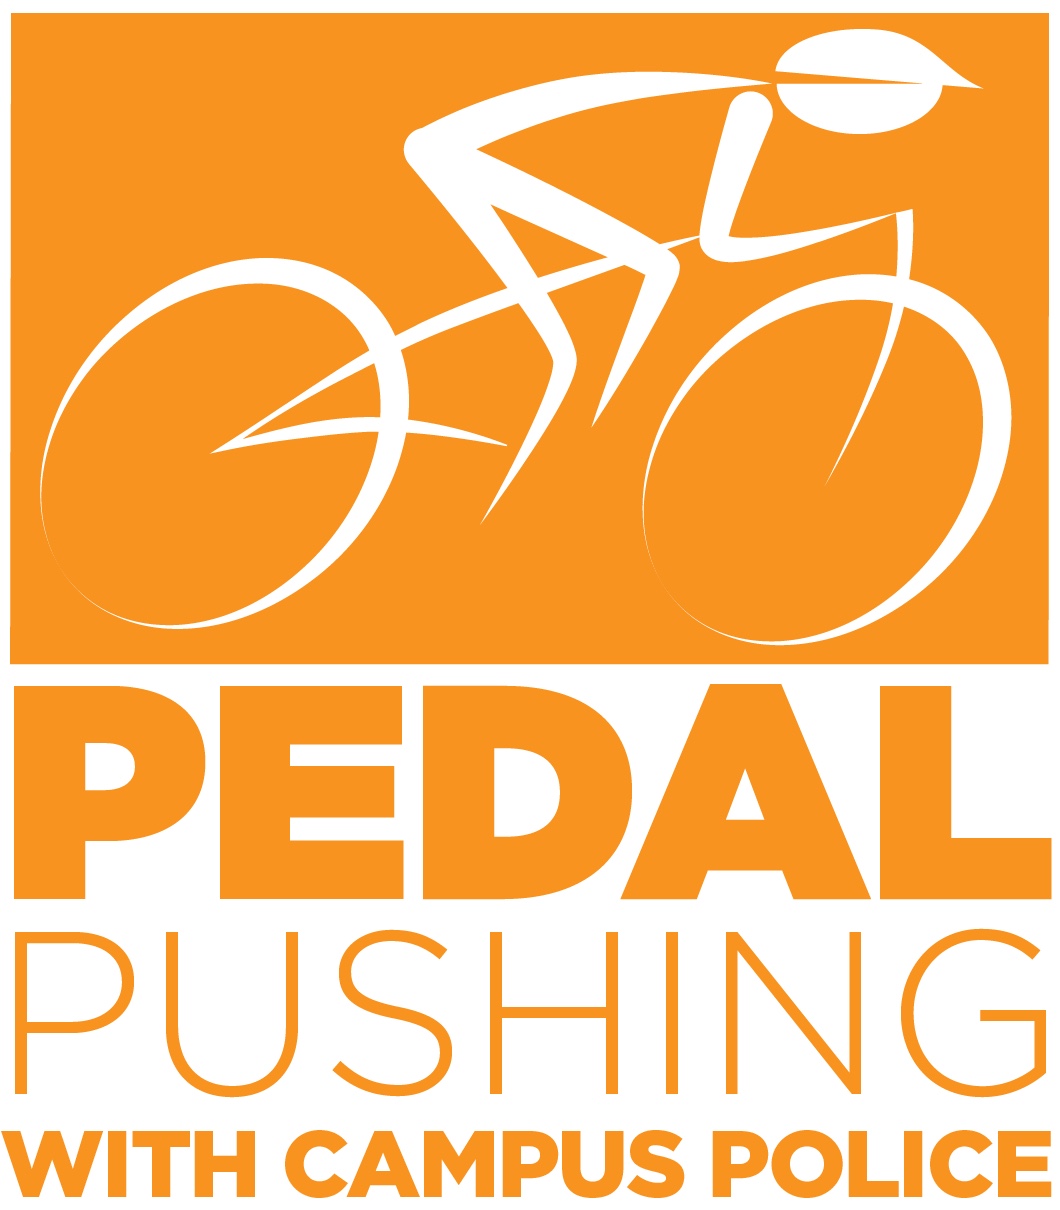 Pedal Pushing logo of bike rider.